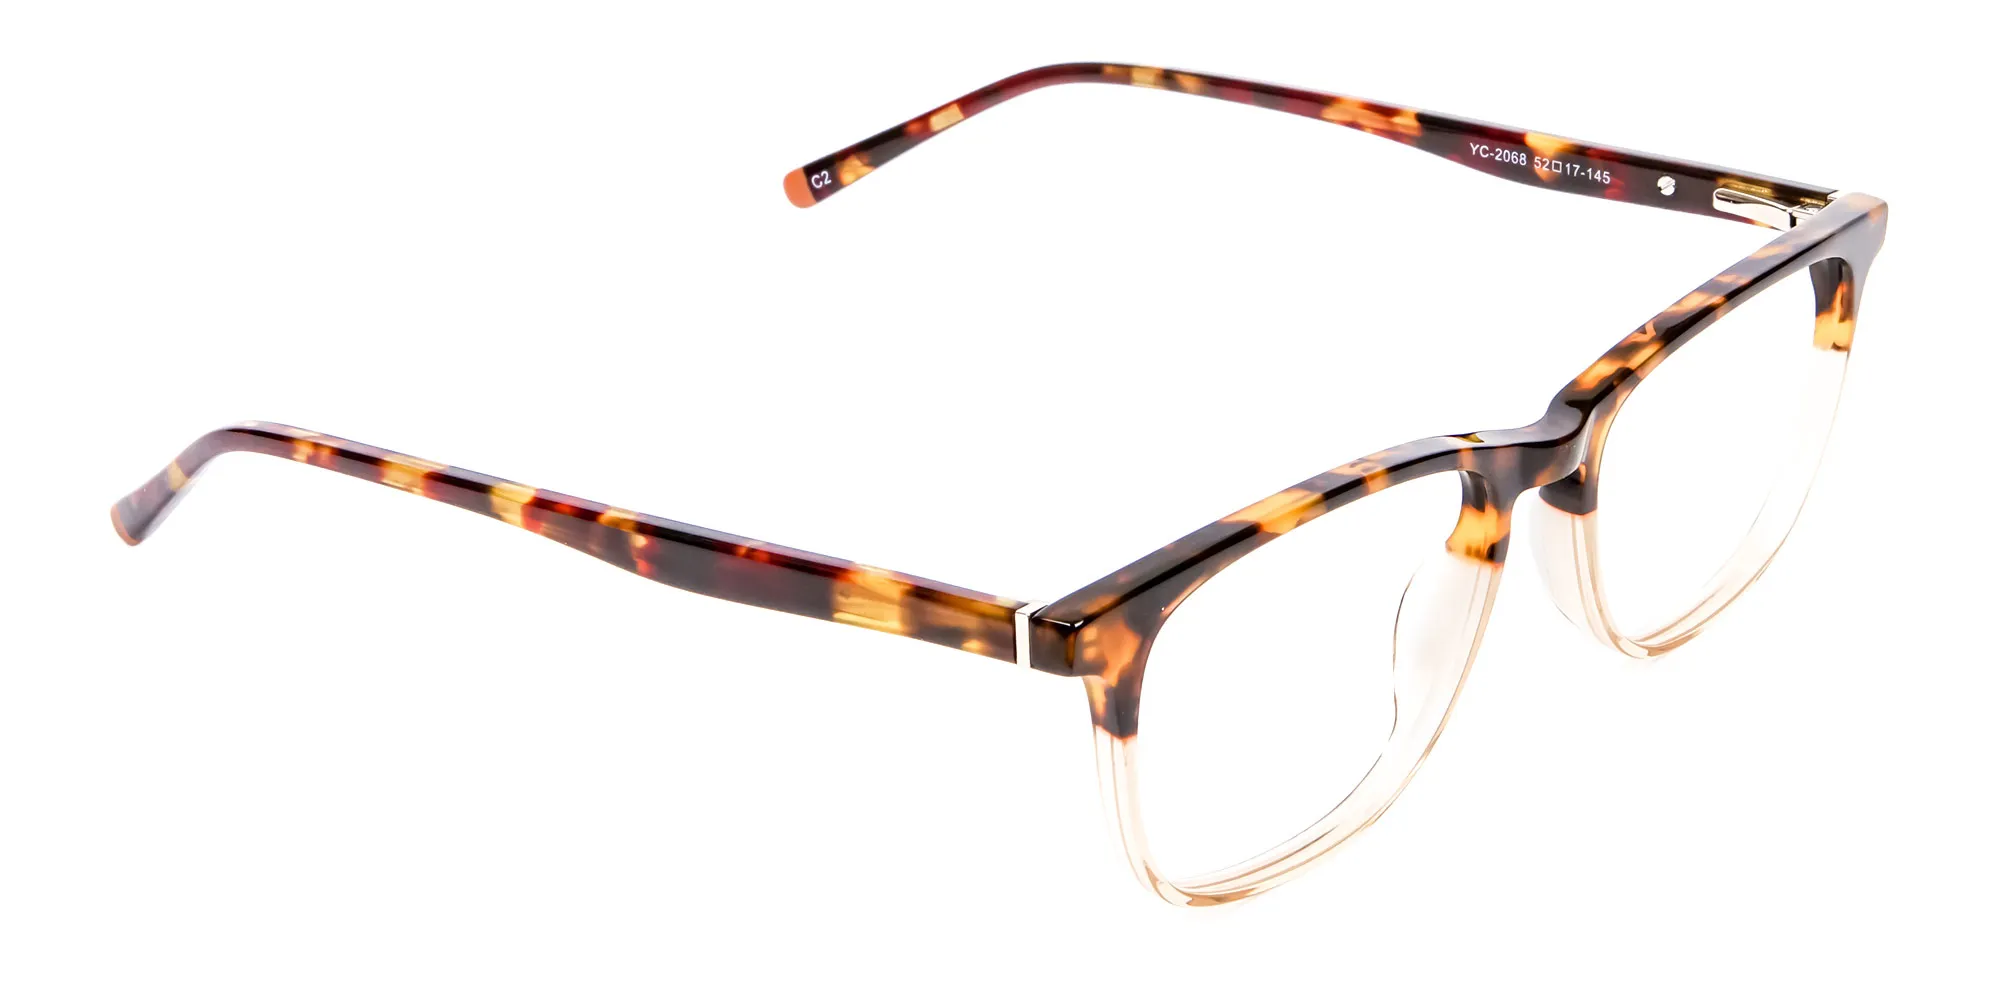 Tortoiseshell Dual-Toned Designer Glasses - 2